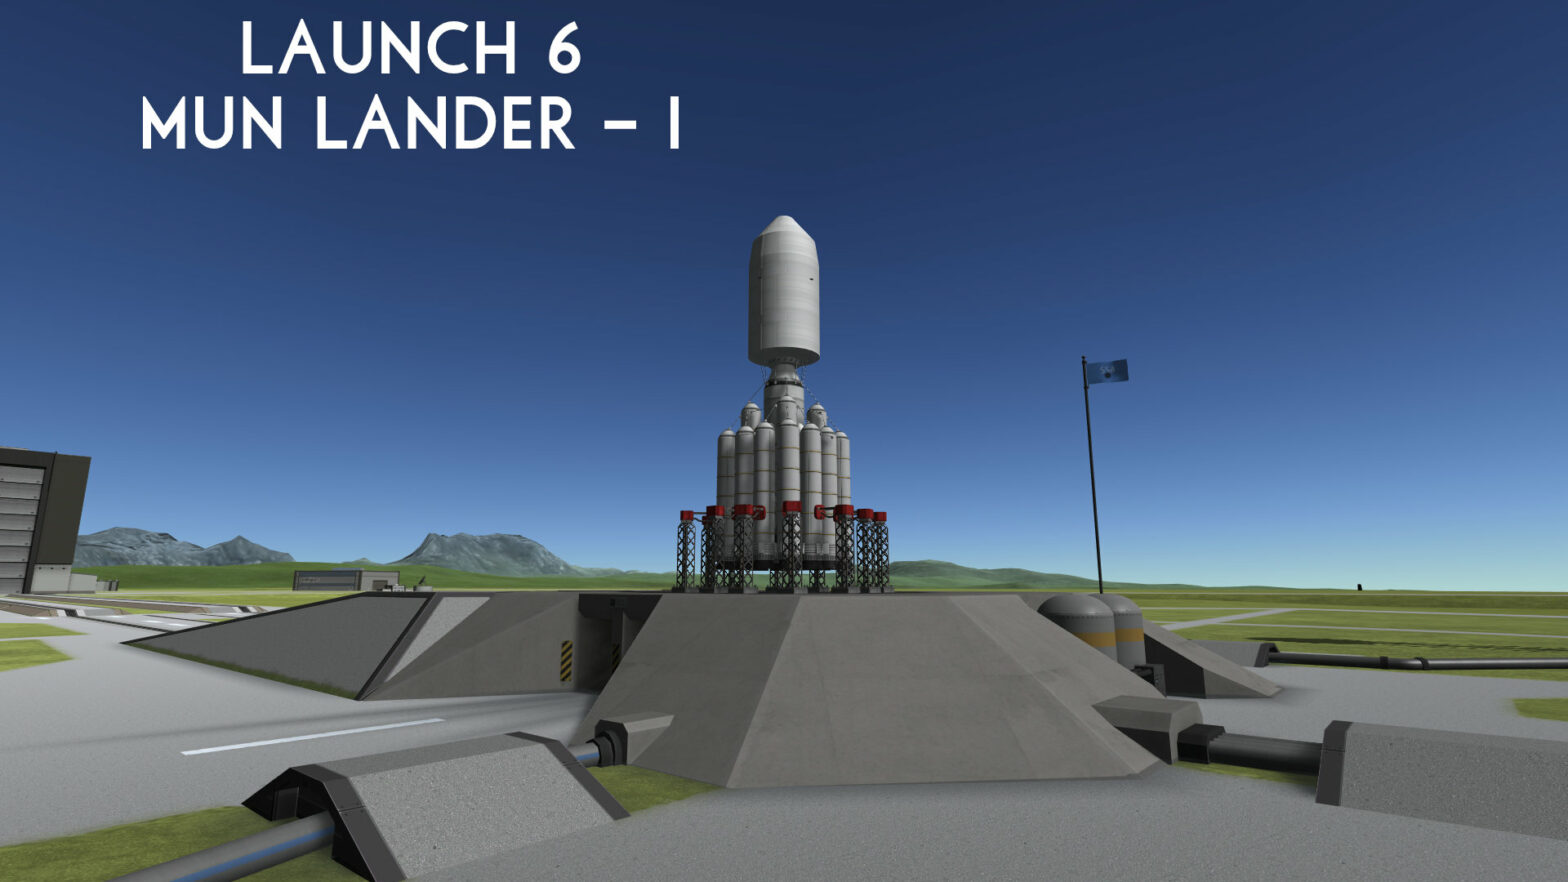 Launch 6 – Mun Lander 1